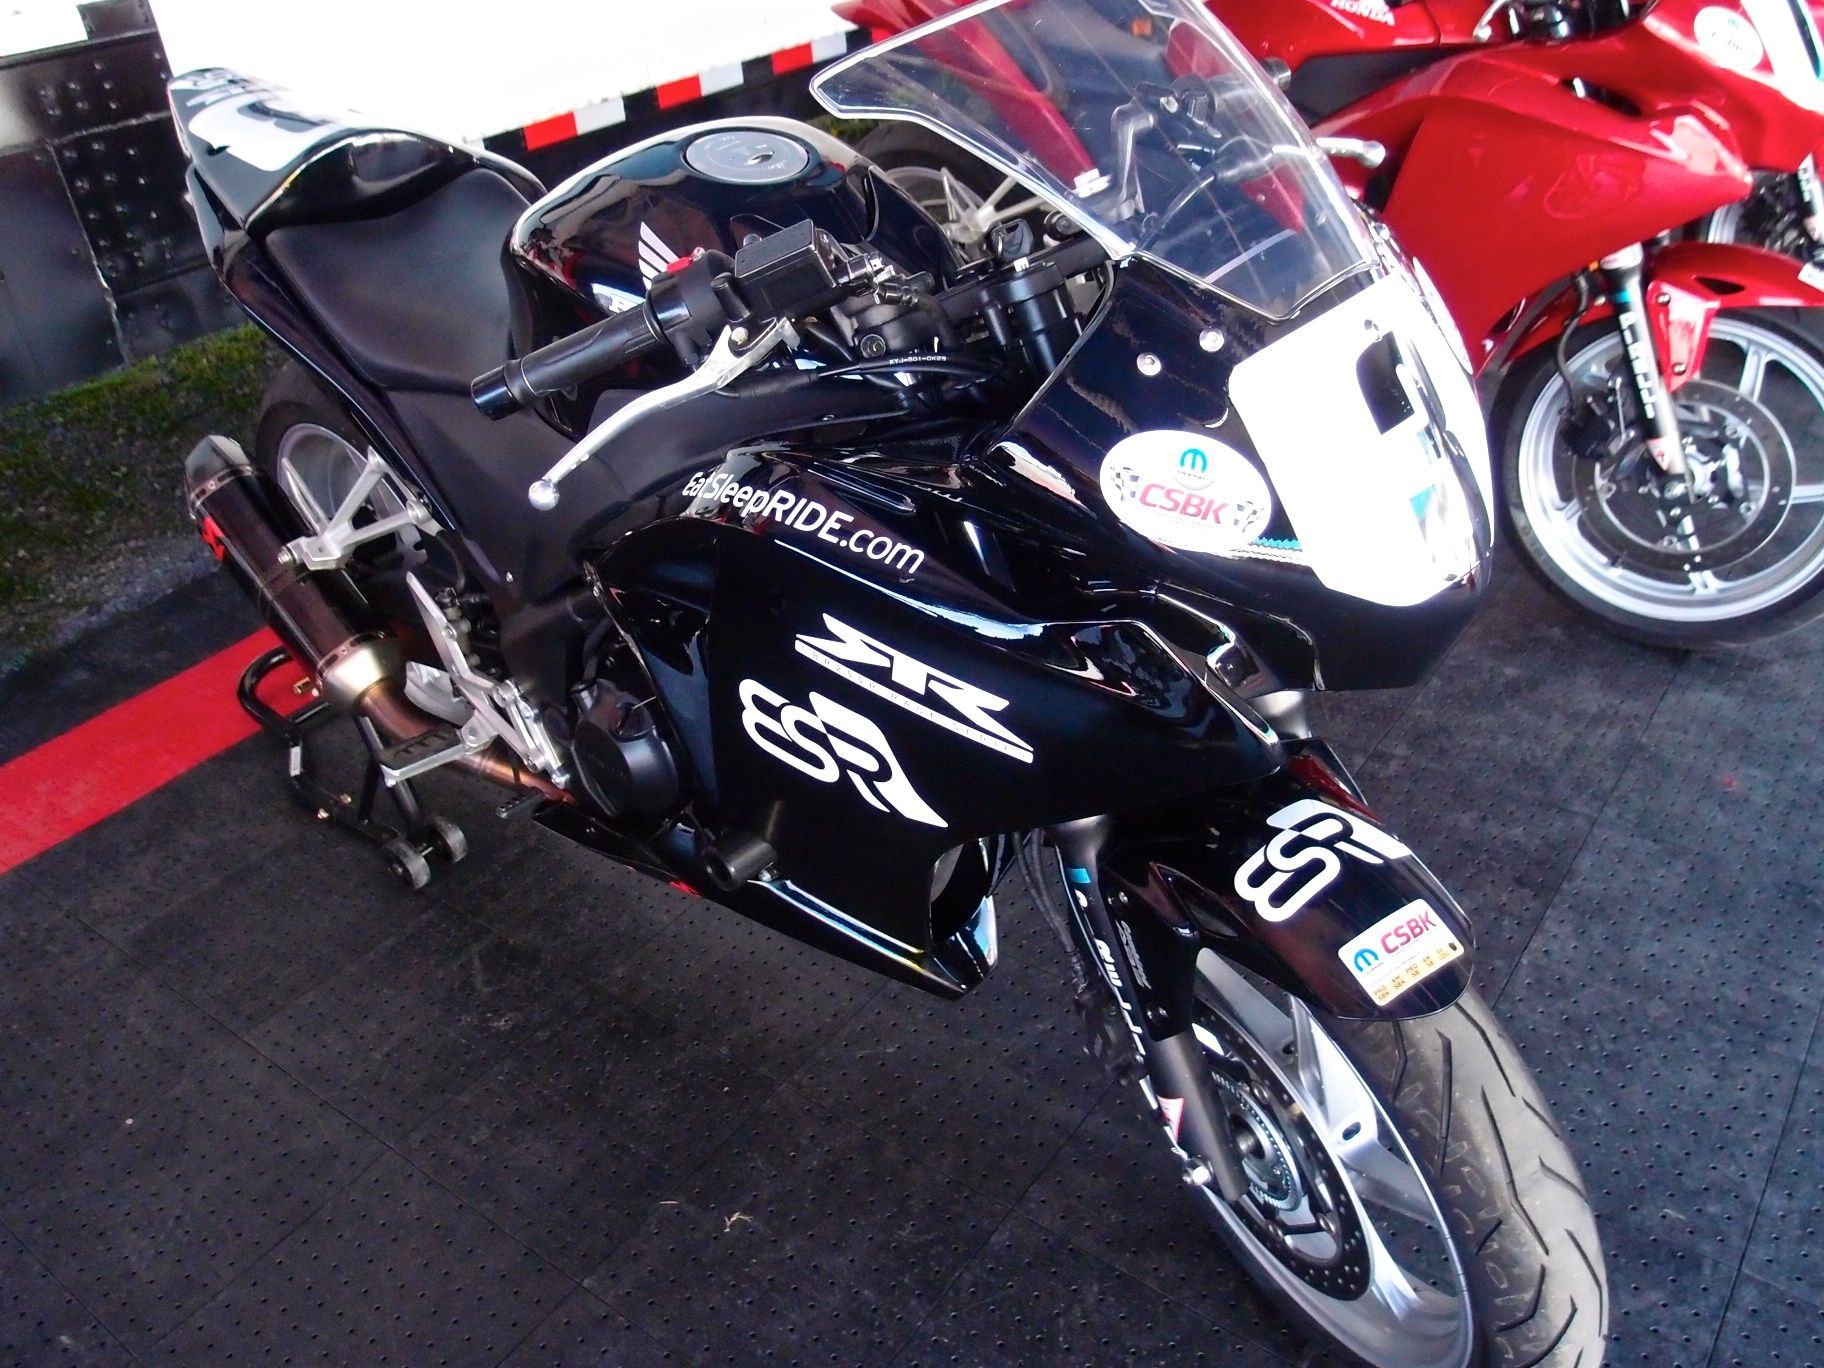 ESR Honda CBR250R CSBK superbike